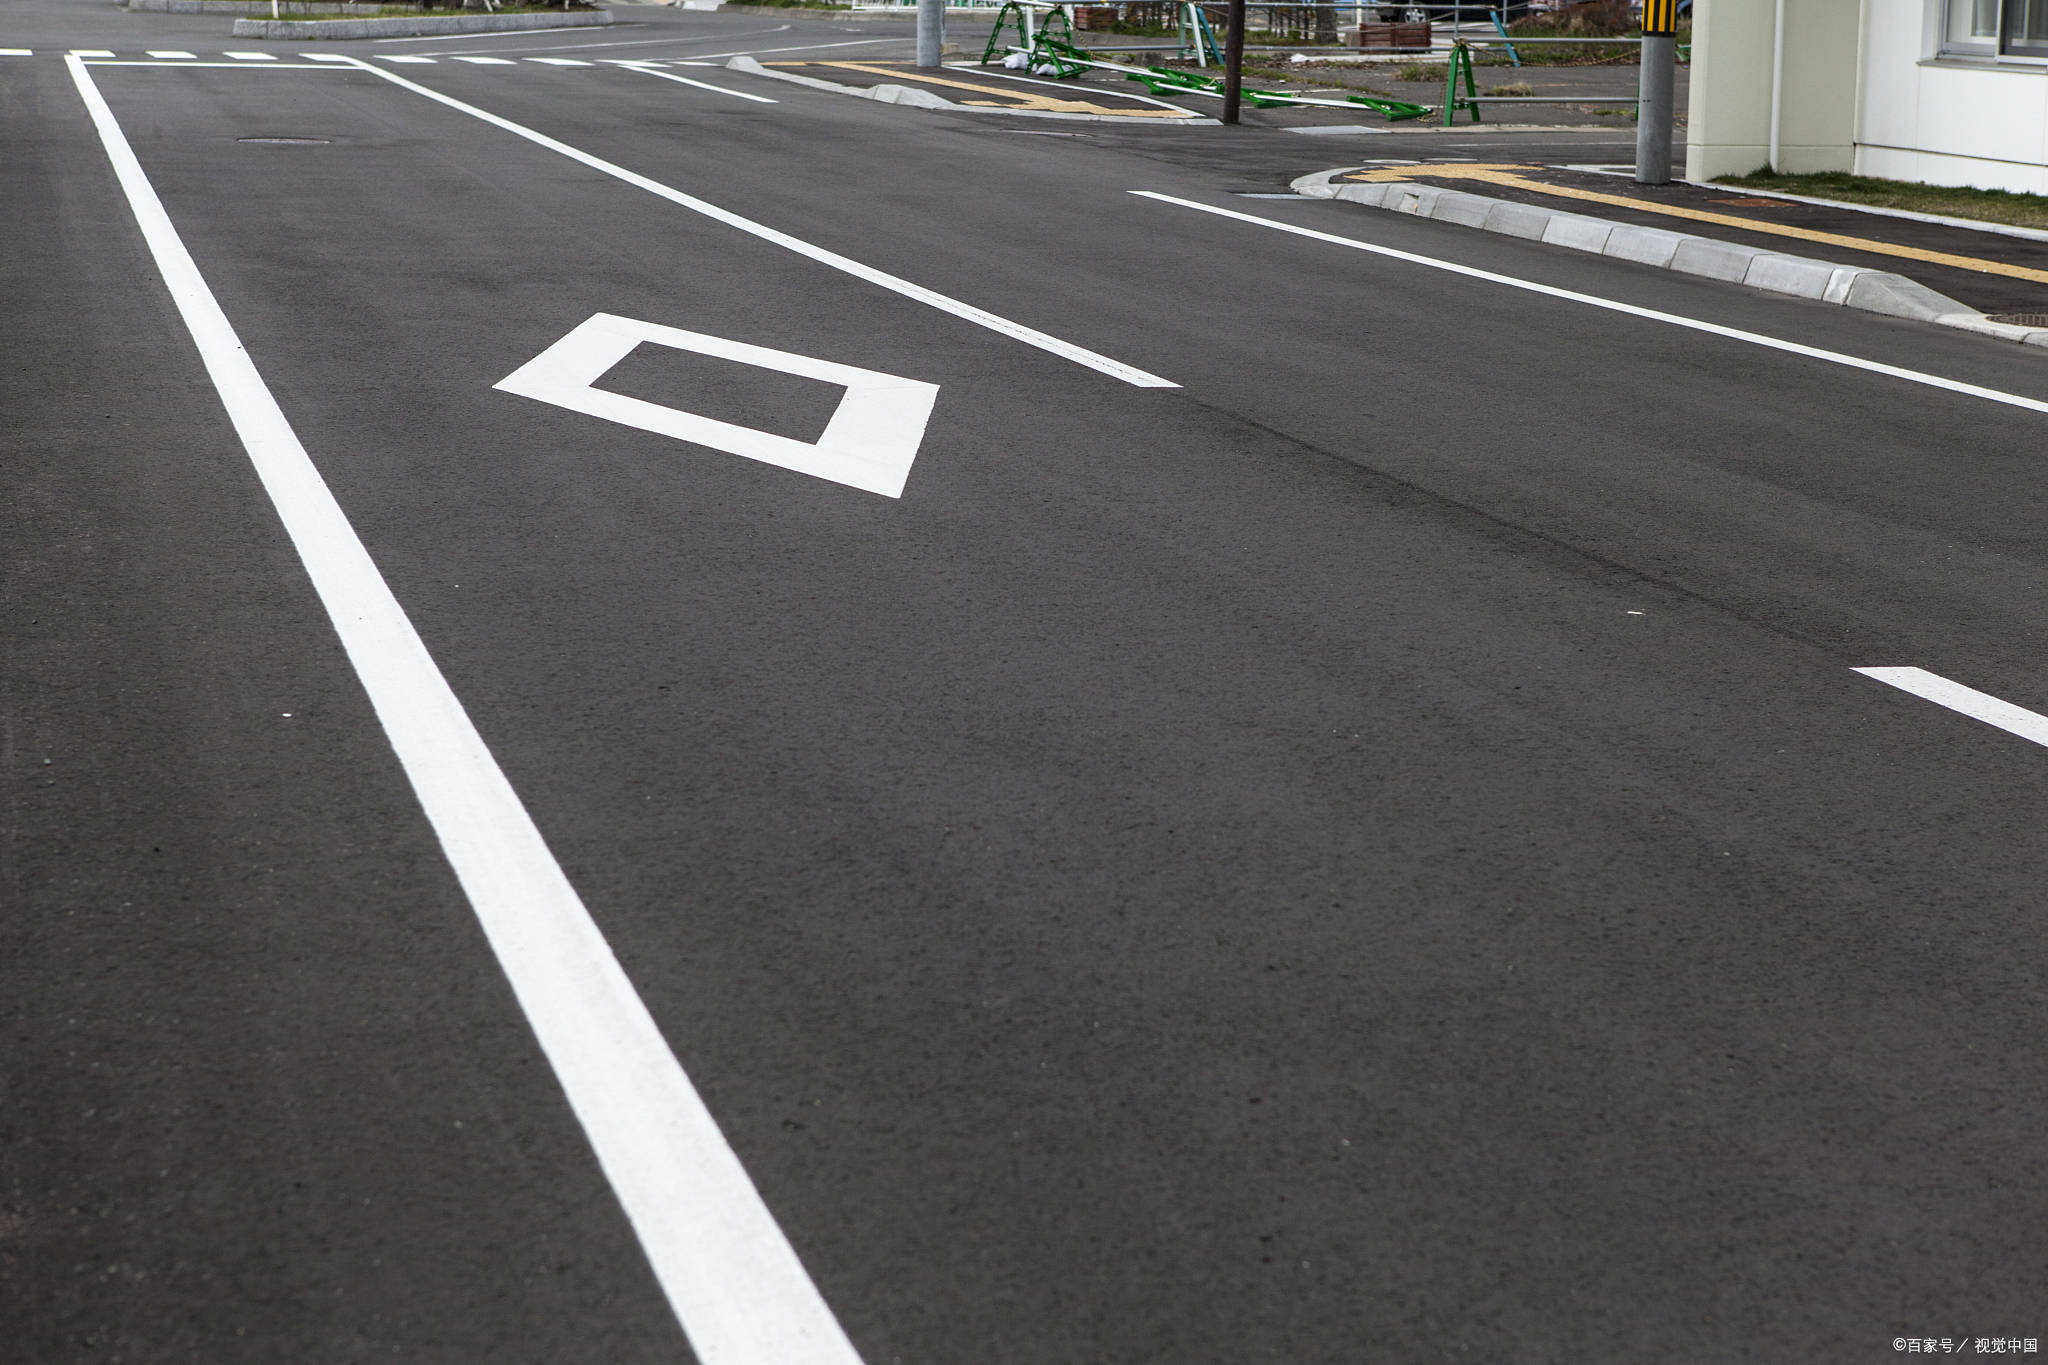 人行横道前的菱形标线是什么意思?老司机们知道吗?